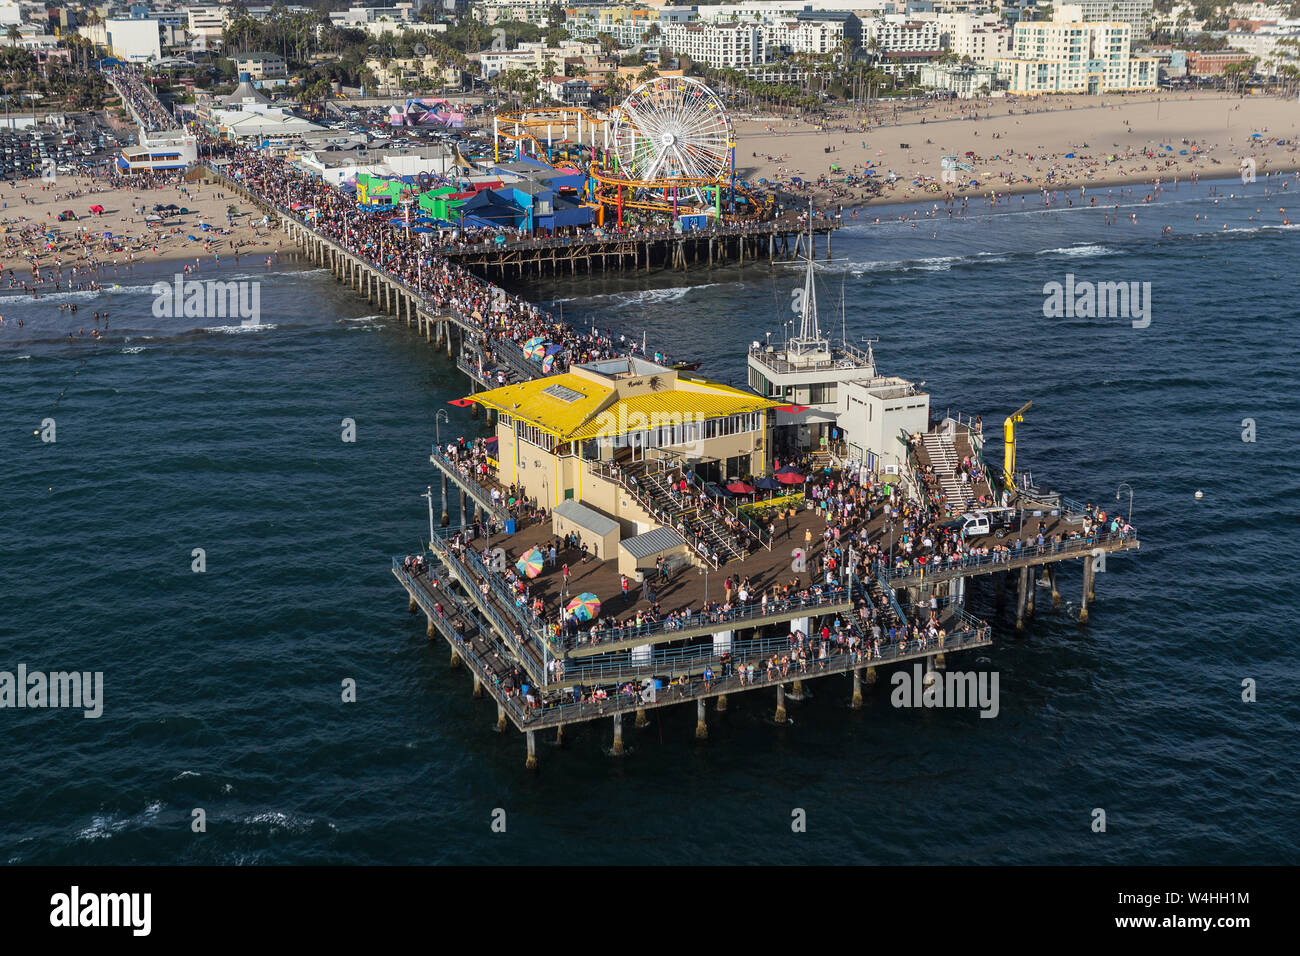 Santa Monica, Californie, USA - 6 août 2016 : Vue aérienne de week-end sur les foules populaires jetée de Santa Monica, près de Los Angeles. Banque D'Images